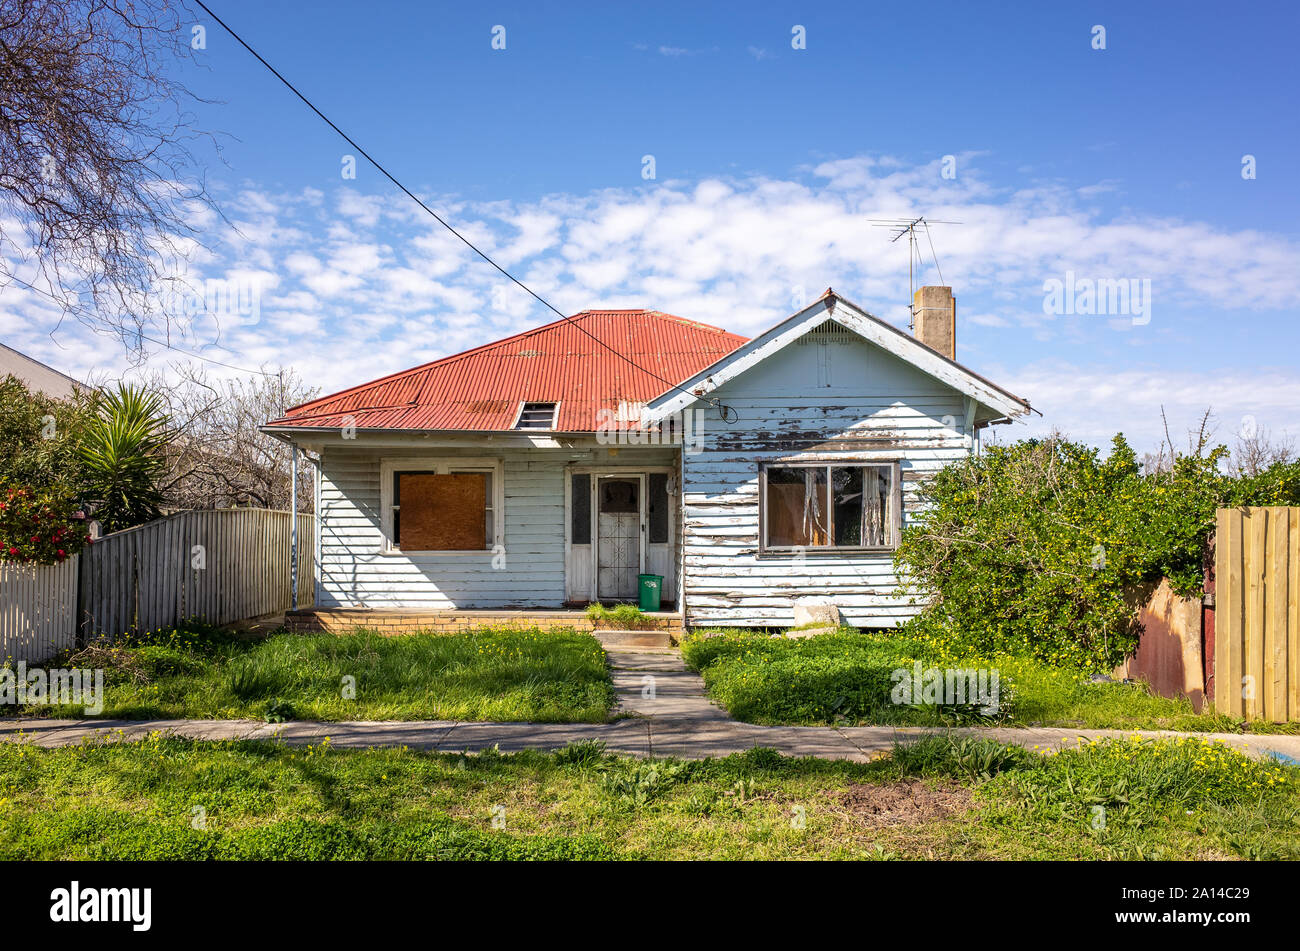 Ein altes und heruntergekommenes Wohnhaus mit einer unbeaufsichtigten Vorgarten. Australische weatherboard Home mit einem Wellblechdach. Stockfoto